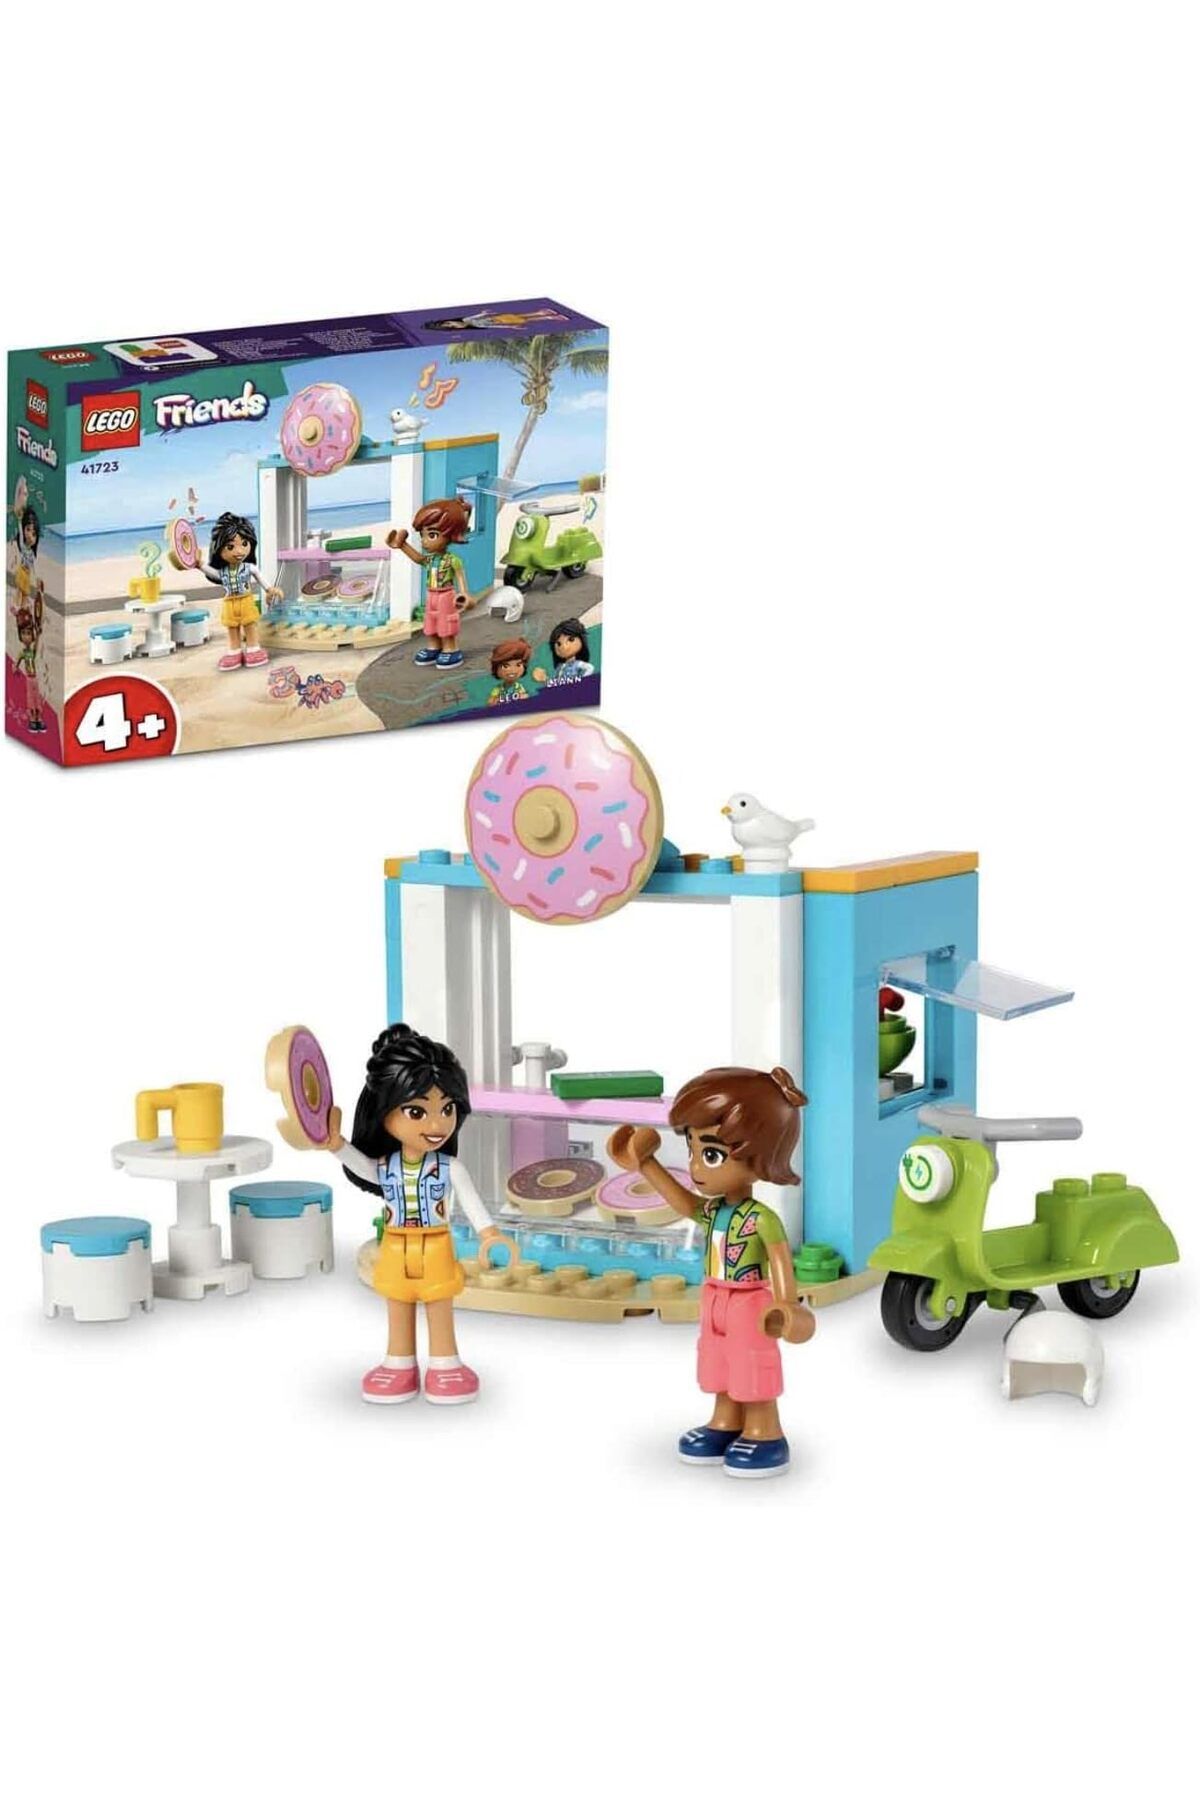 LEGO ® Friends Donut Dükkanı 41723 - 4 Yaş ve Üzeri Çocuklar için Oyuncak Yapım Seti (63 Parça)